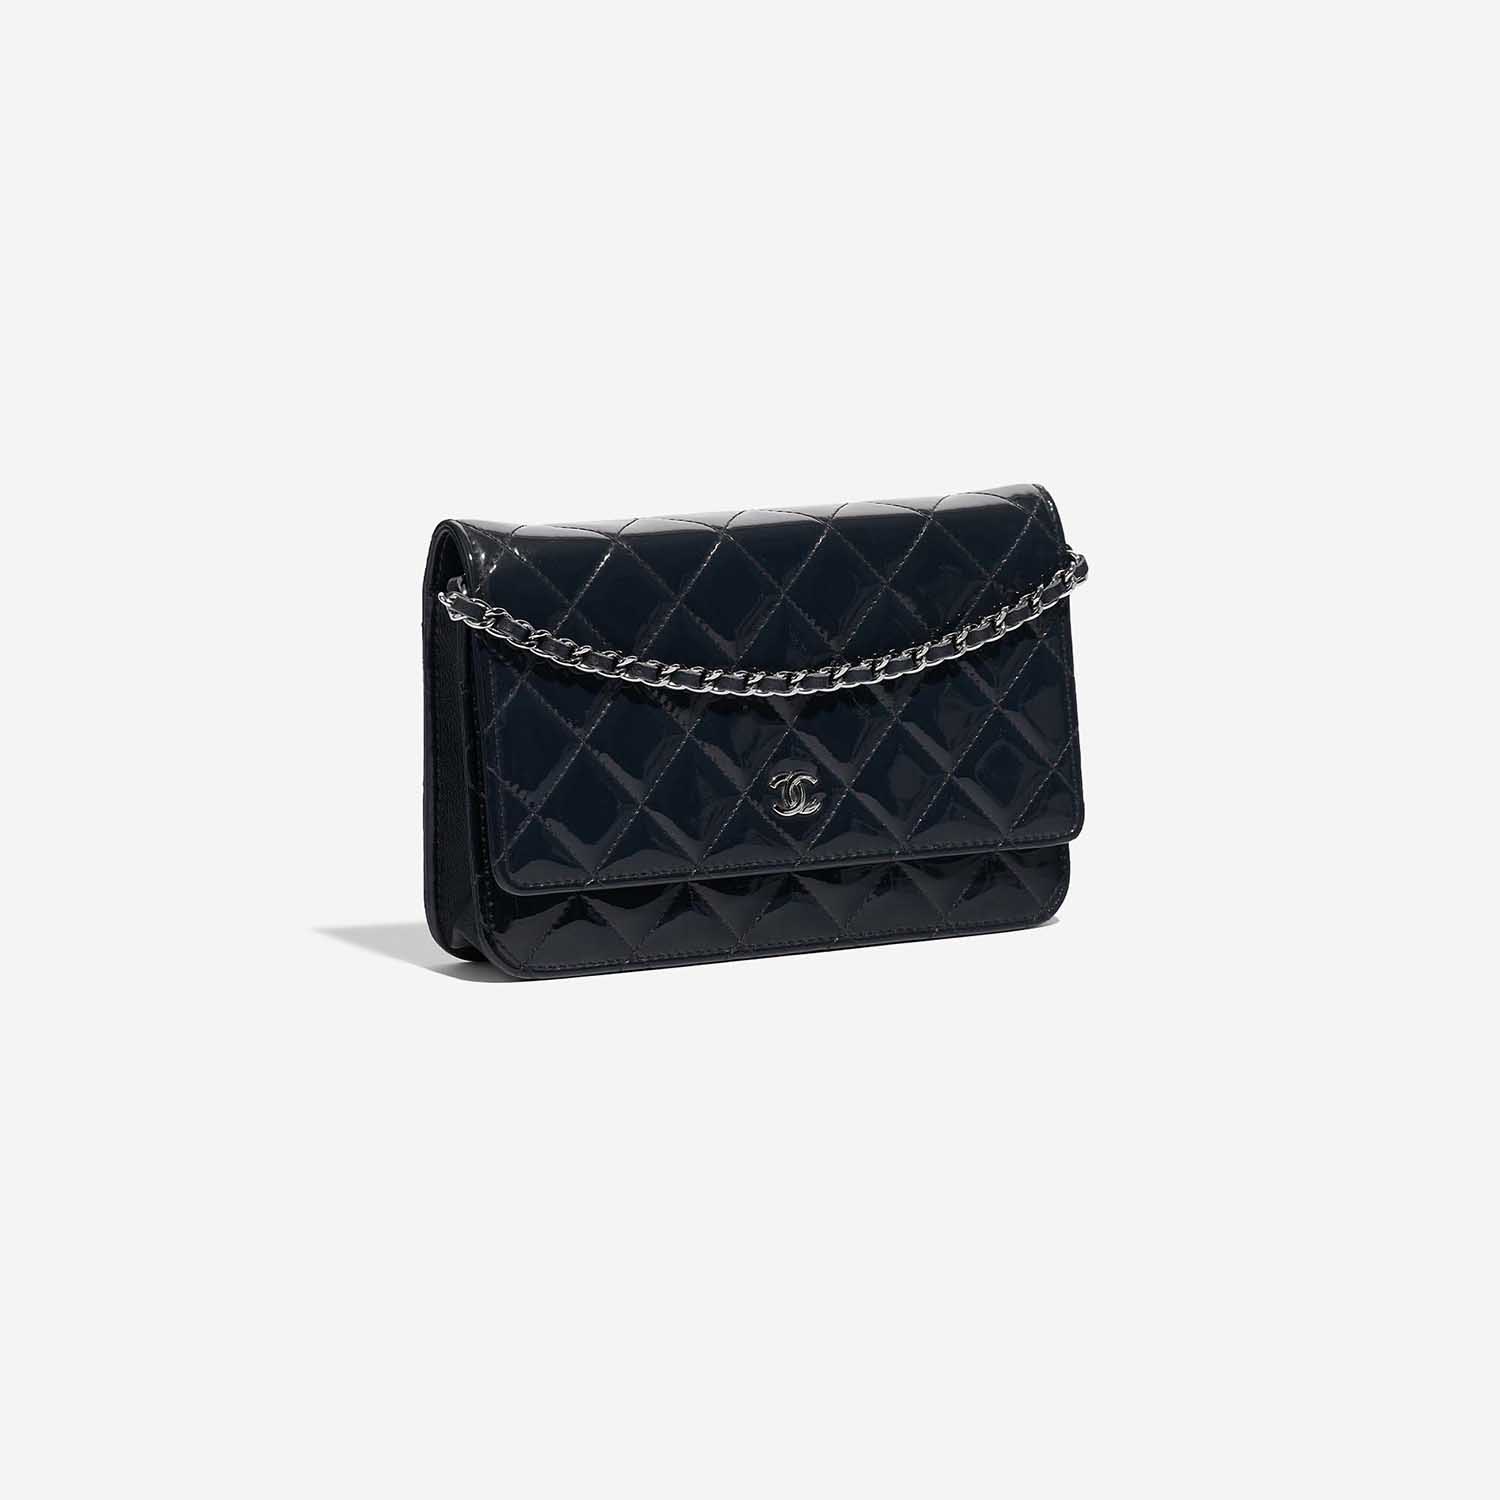 Chanel Timeless WOC DarkBlue Side Front | Verkaufen Sie Ihre Designer-Tasche auf Saclab.com